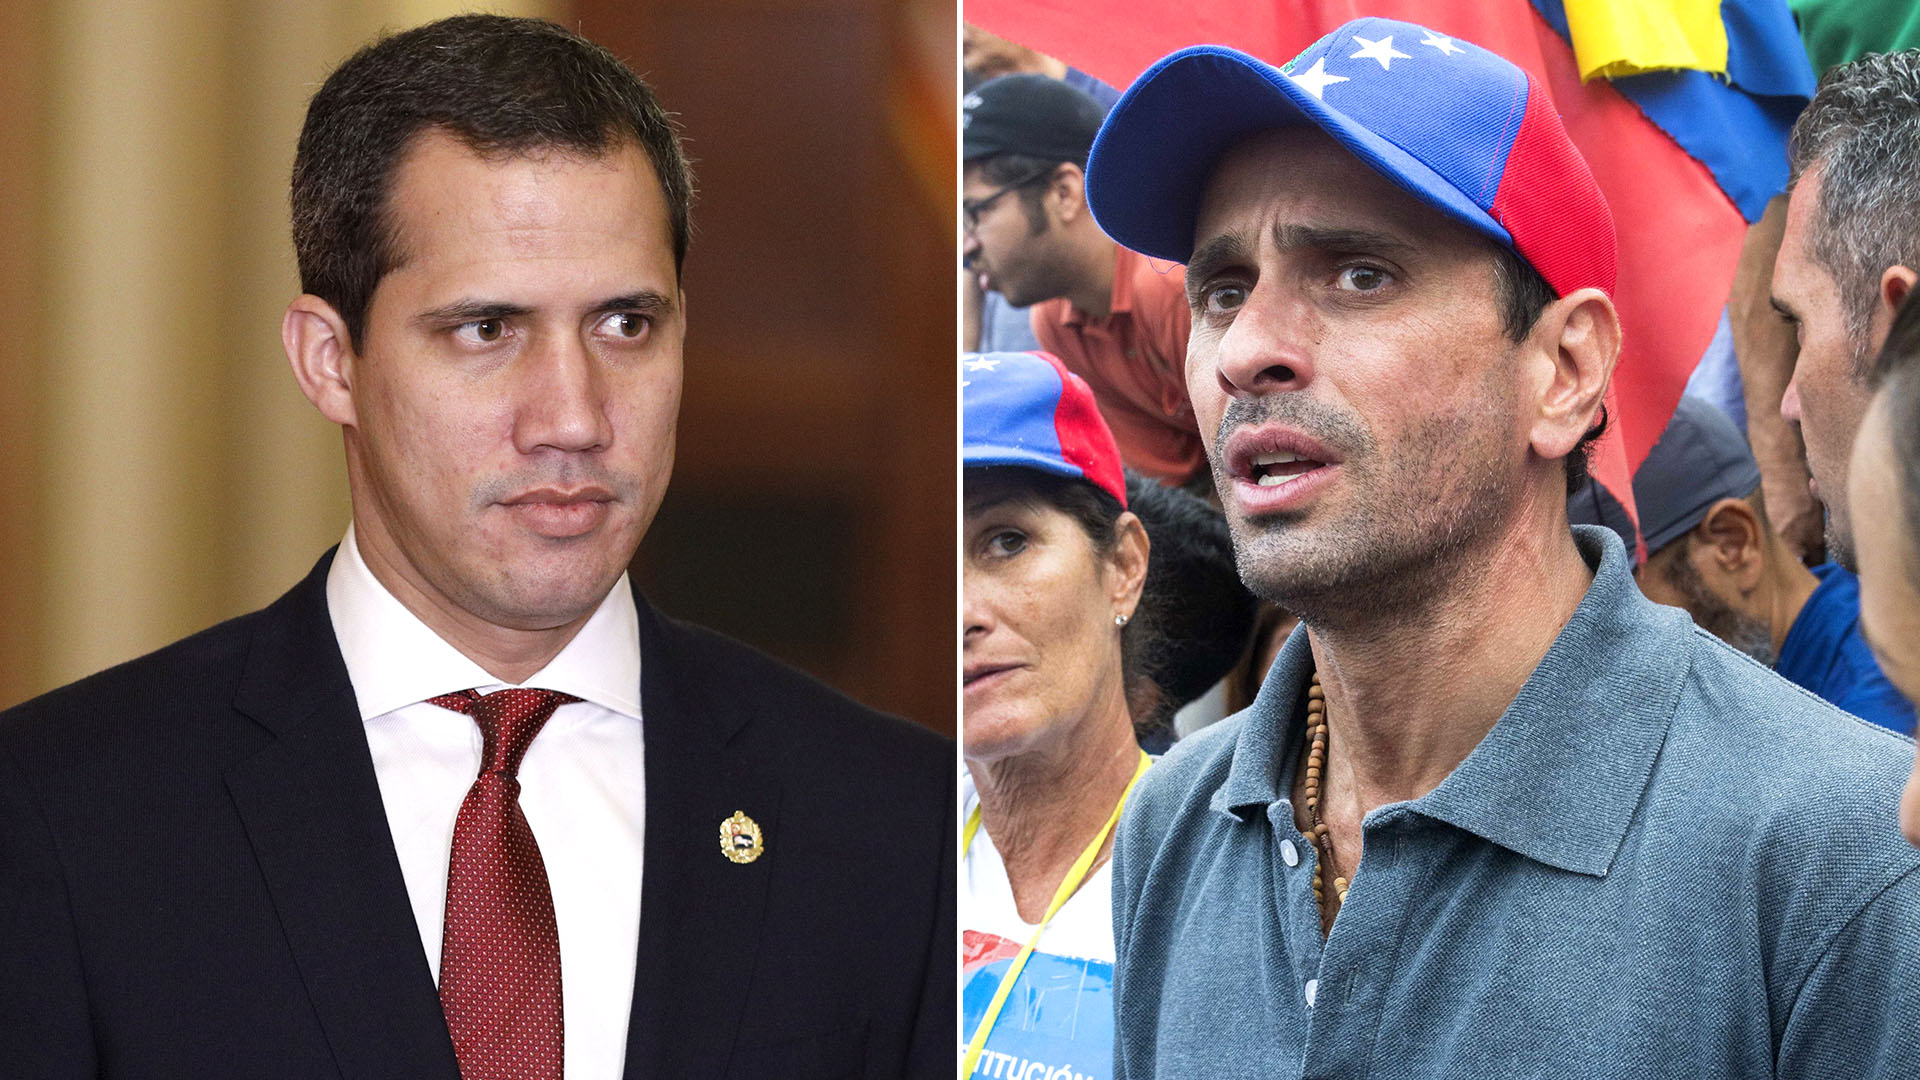 La oposición venezolana anunciará este miércoles la fecha de las primarias para elegir al candidato que enfrentará a Maduro.